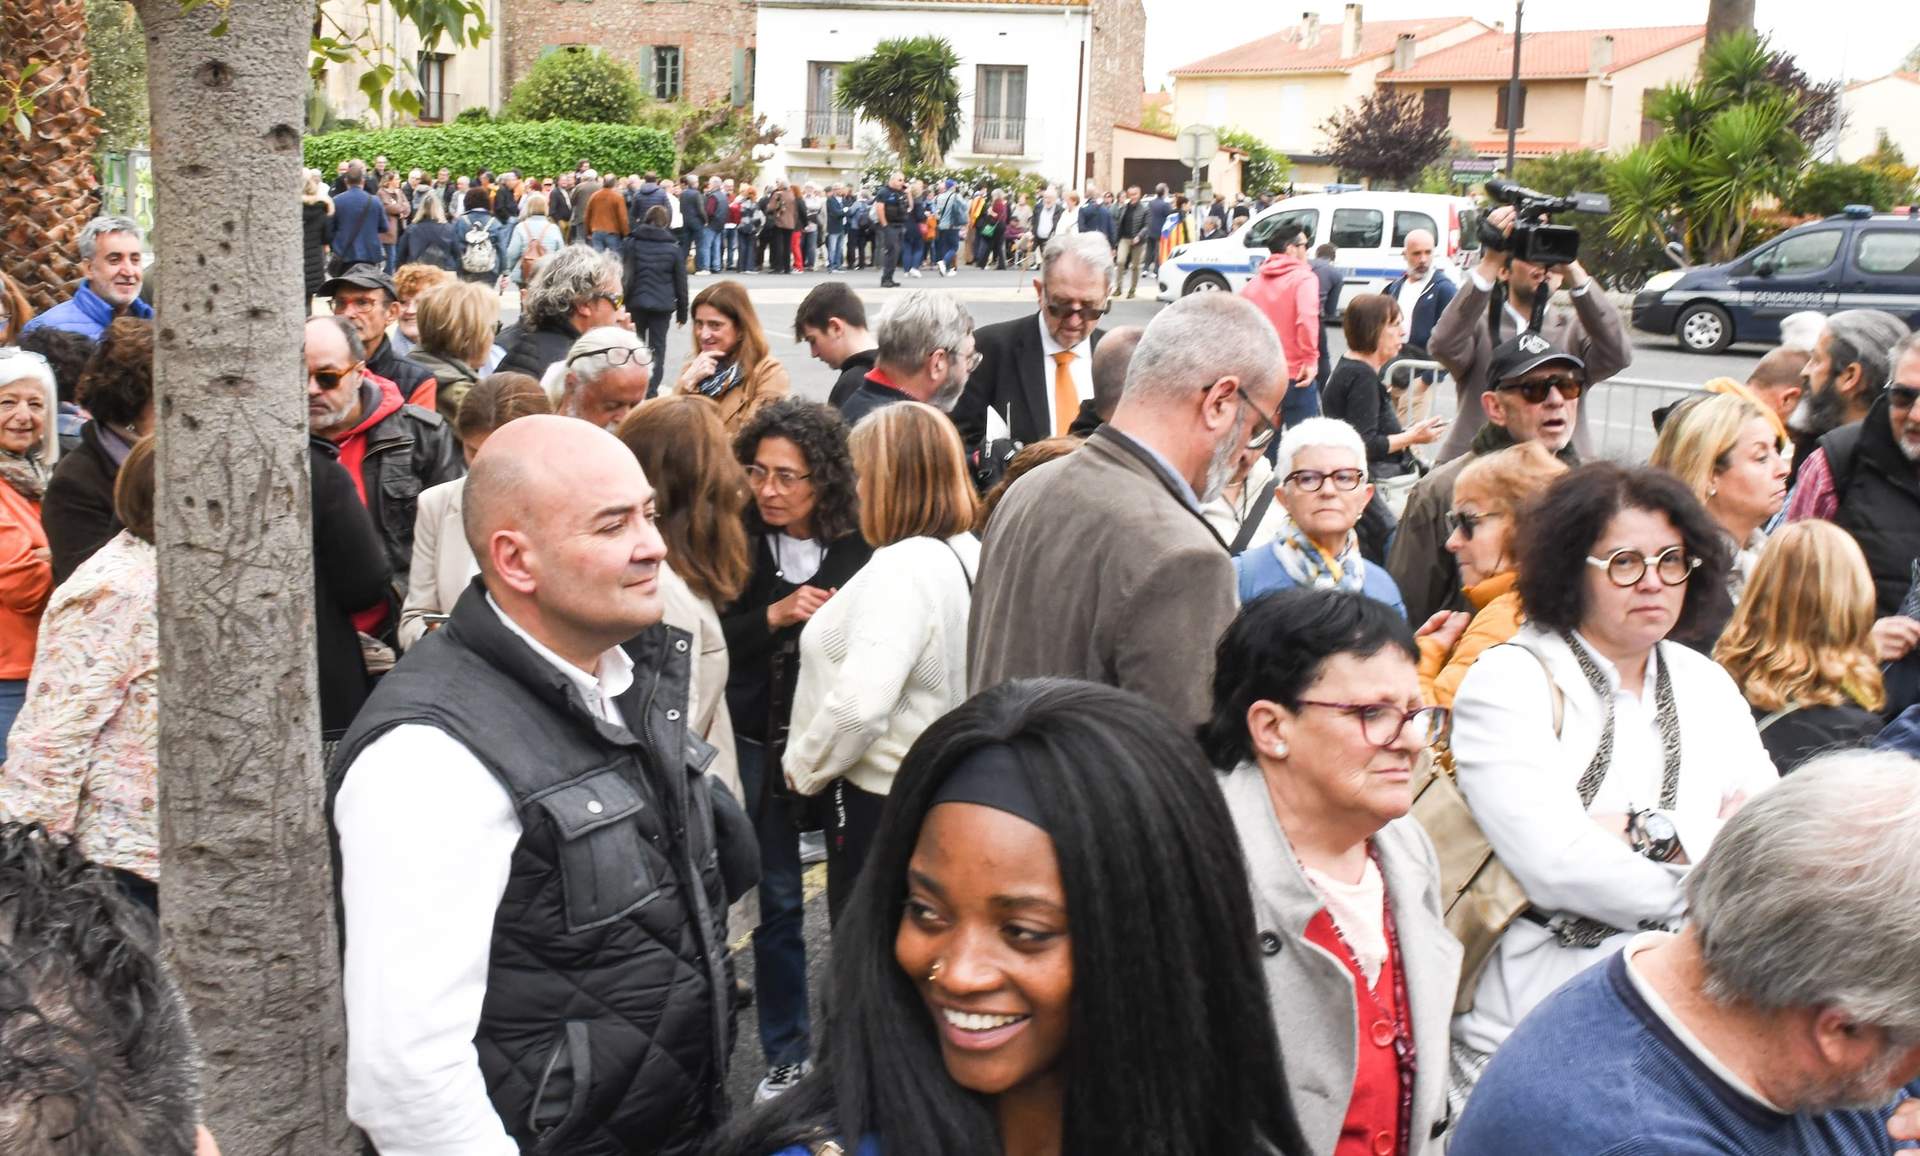 Se formaron largas colas en Elna, Francia, para acceder al acto de presentación de la candidatura de Puigdemont a las elecciones catalanas (Foto: Glòria Sánchez / Europa Press)